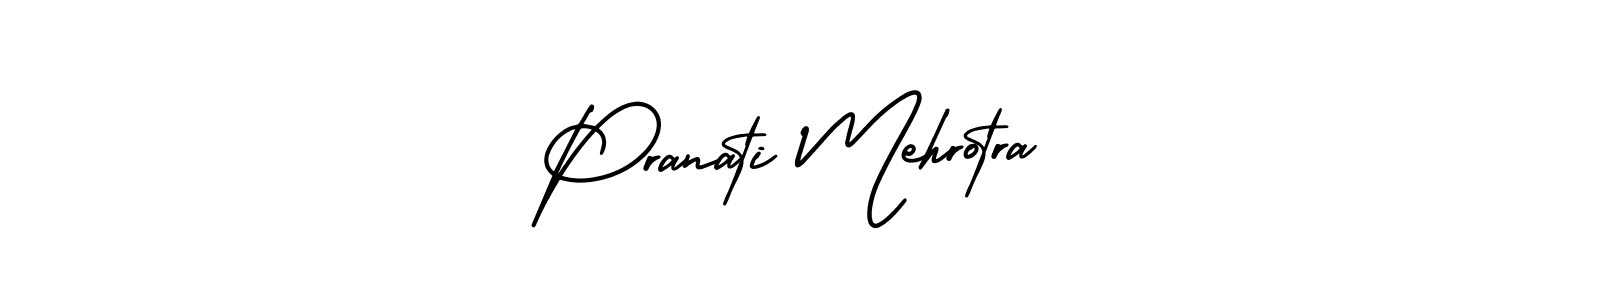 How to Draw Pranati Mehrotra signature style? AmerikaSignatureDemo-Regular is a latest design signature styles for name Pranati Mehrotra. Pranati Mehrotra signature style 3 images and pictures png